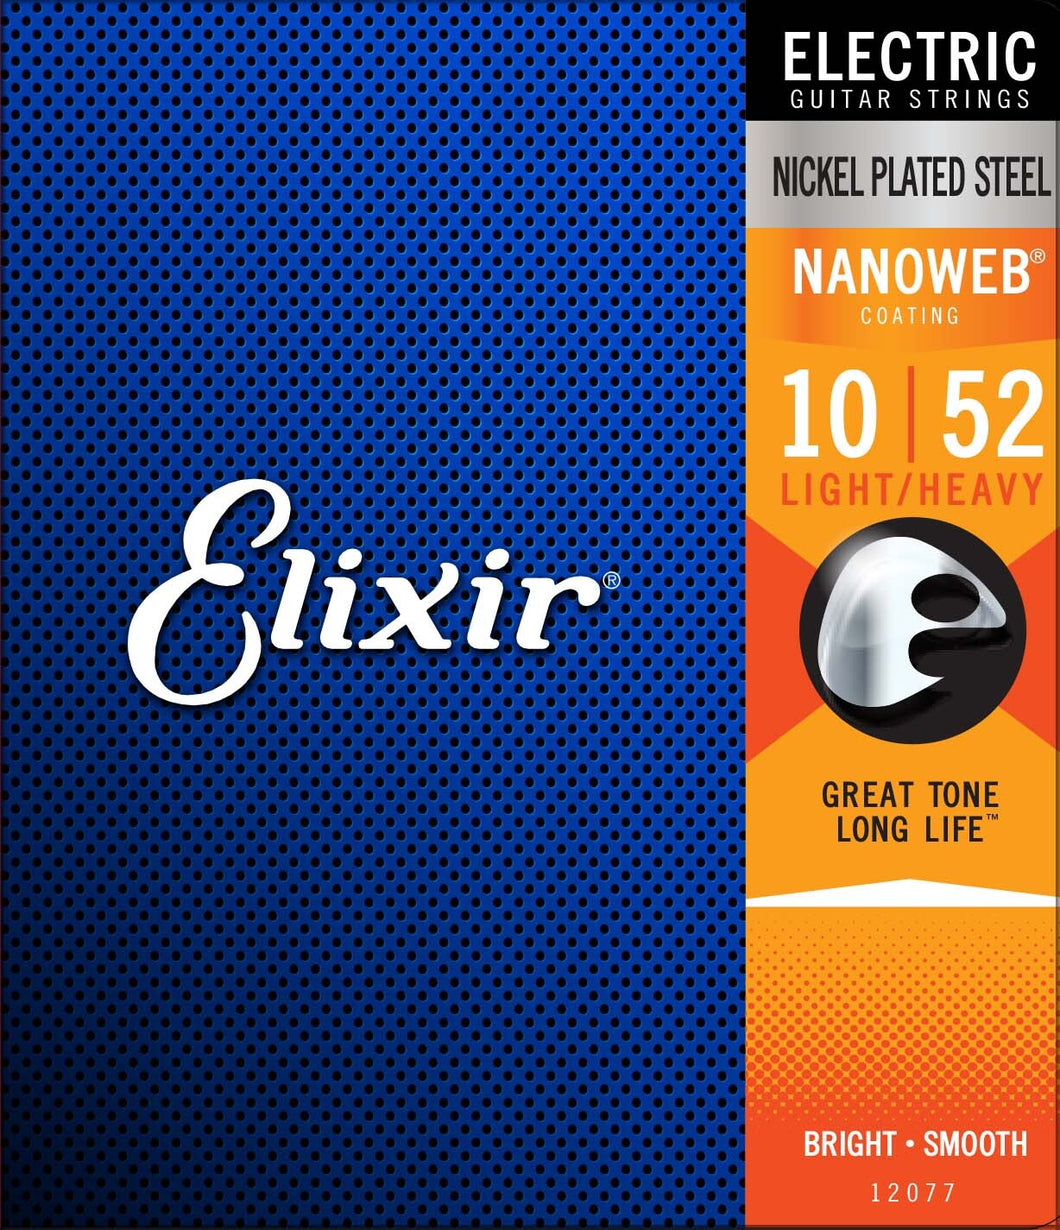 Elixir 12077 Nanoweb Nickel Plated Steel 10-52 Electric Guitar Strings